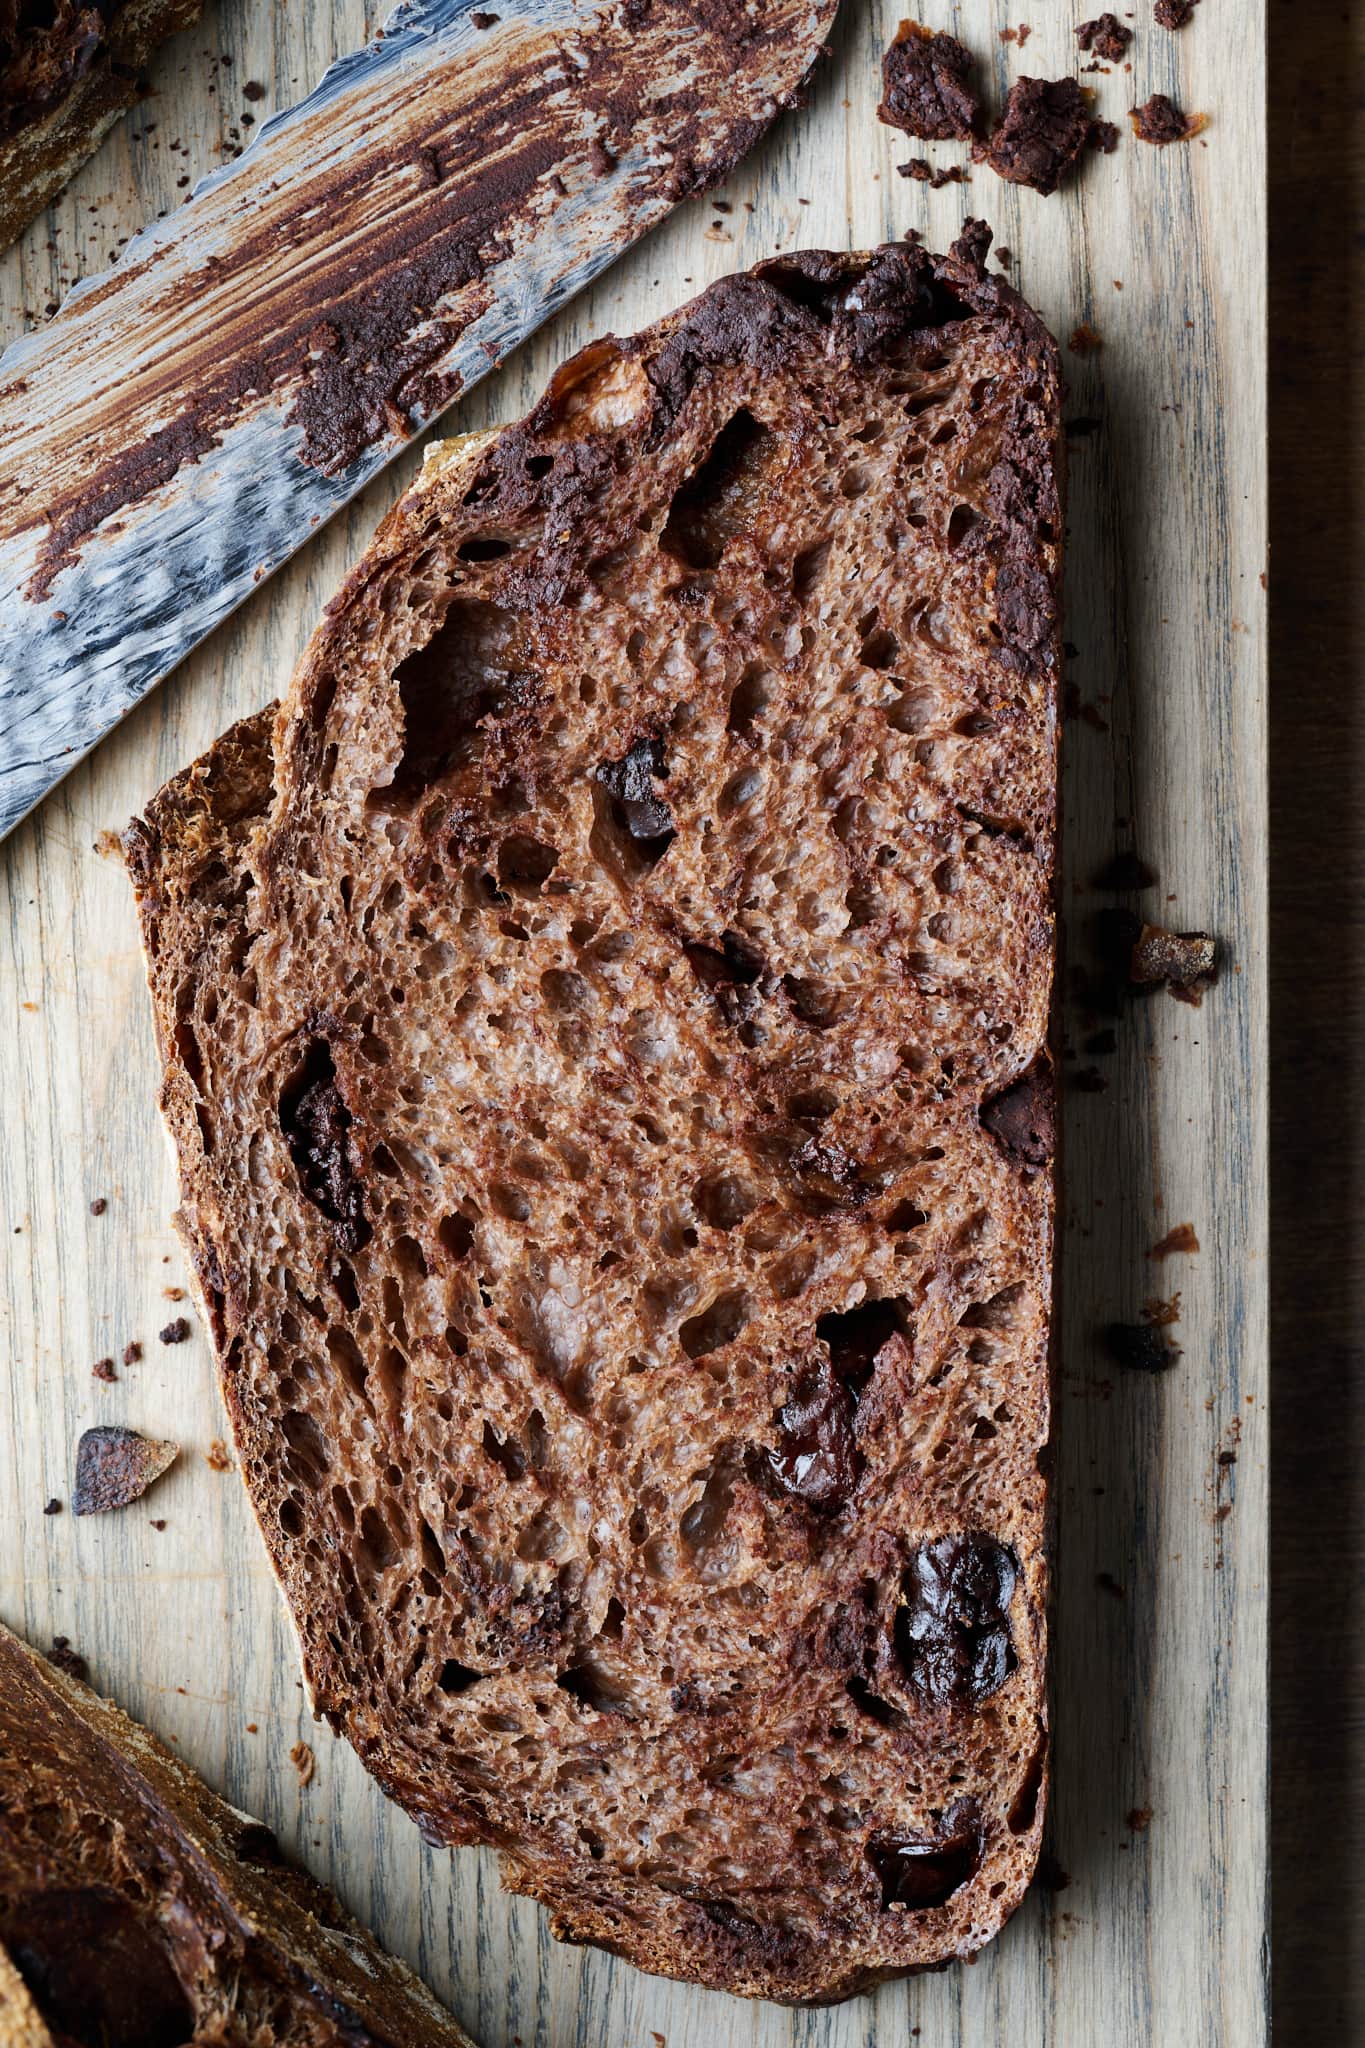 Chocolate sourdough bread interior